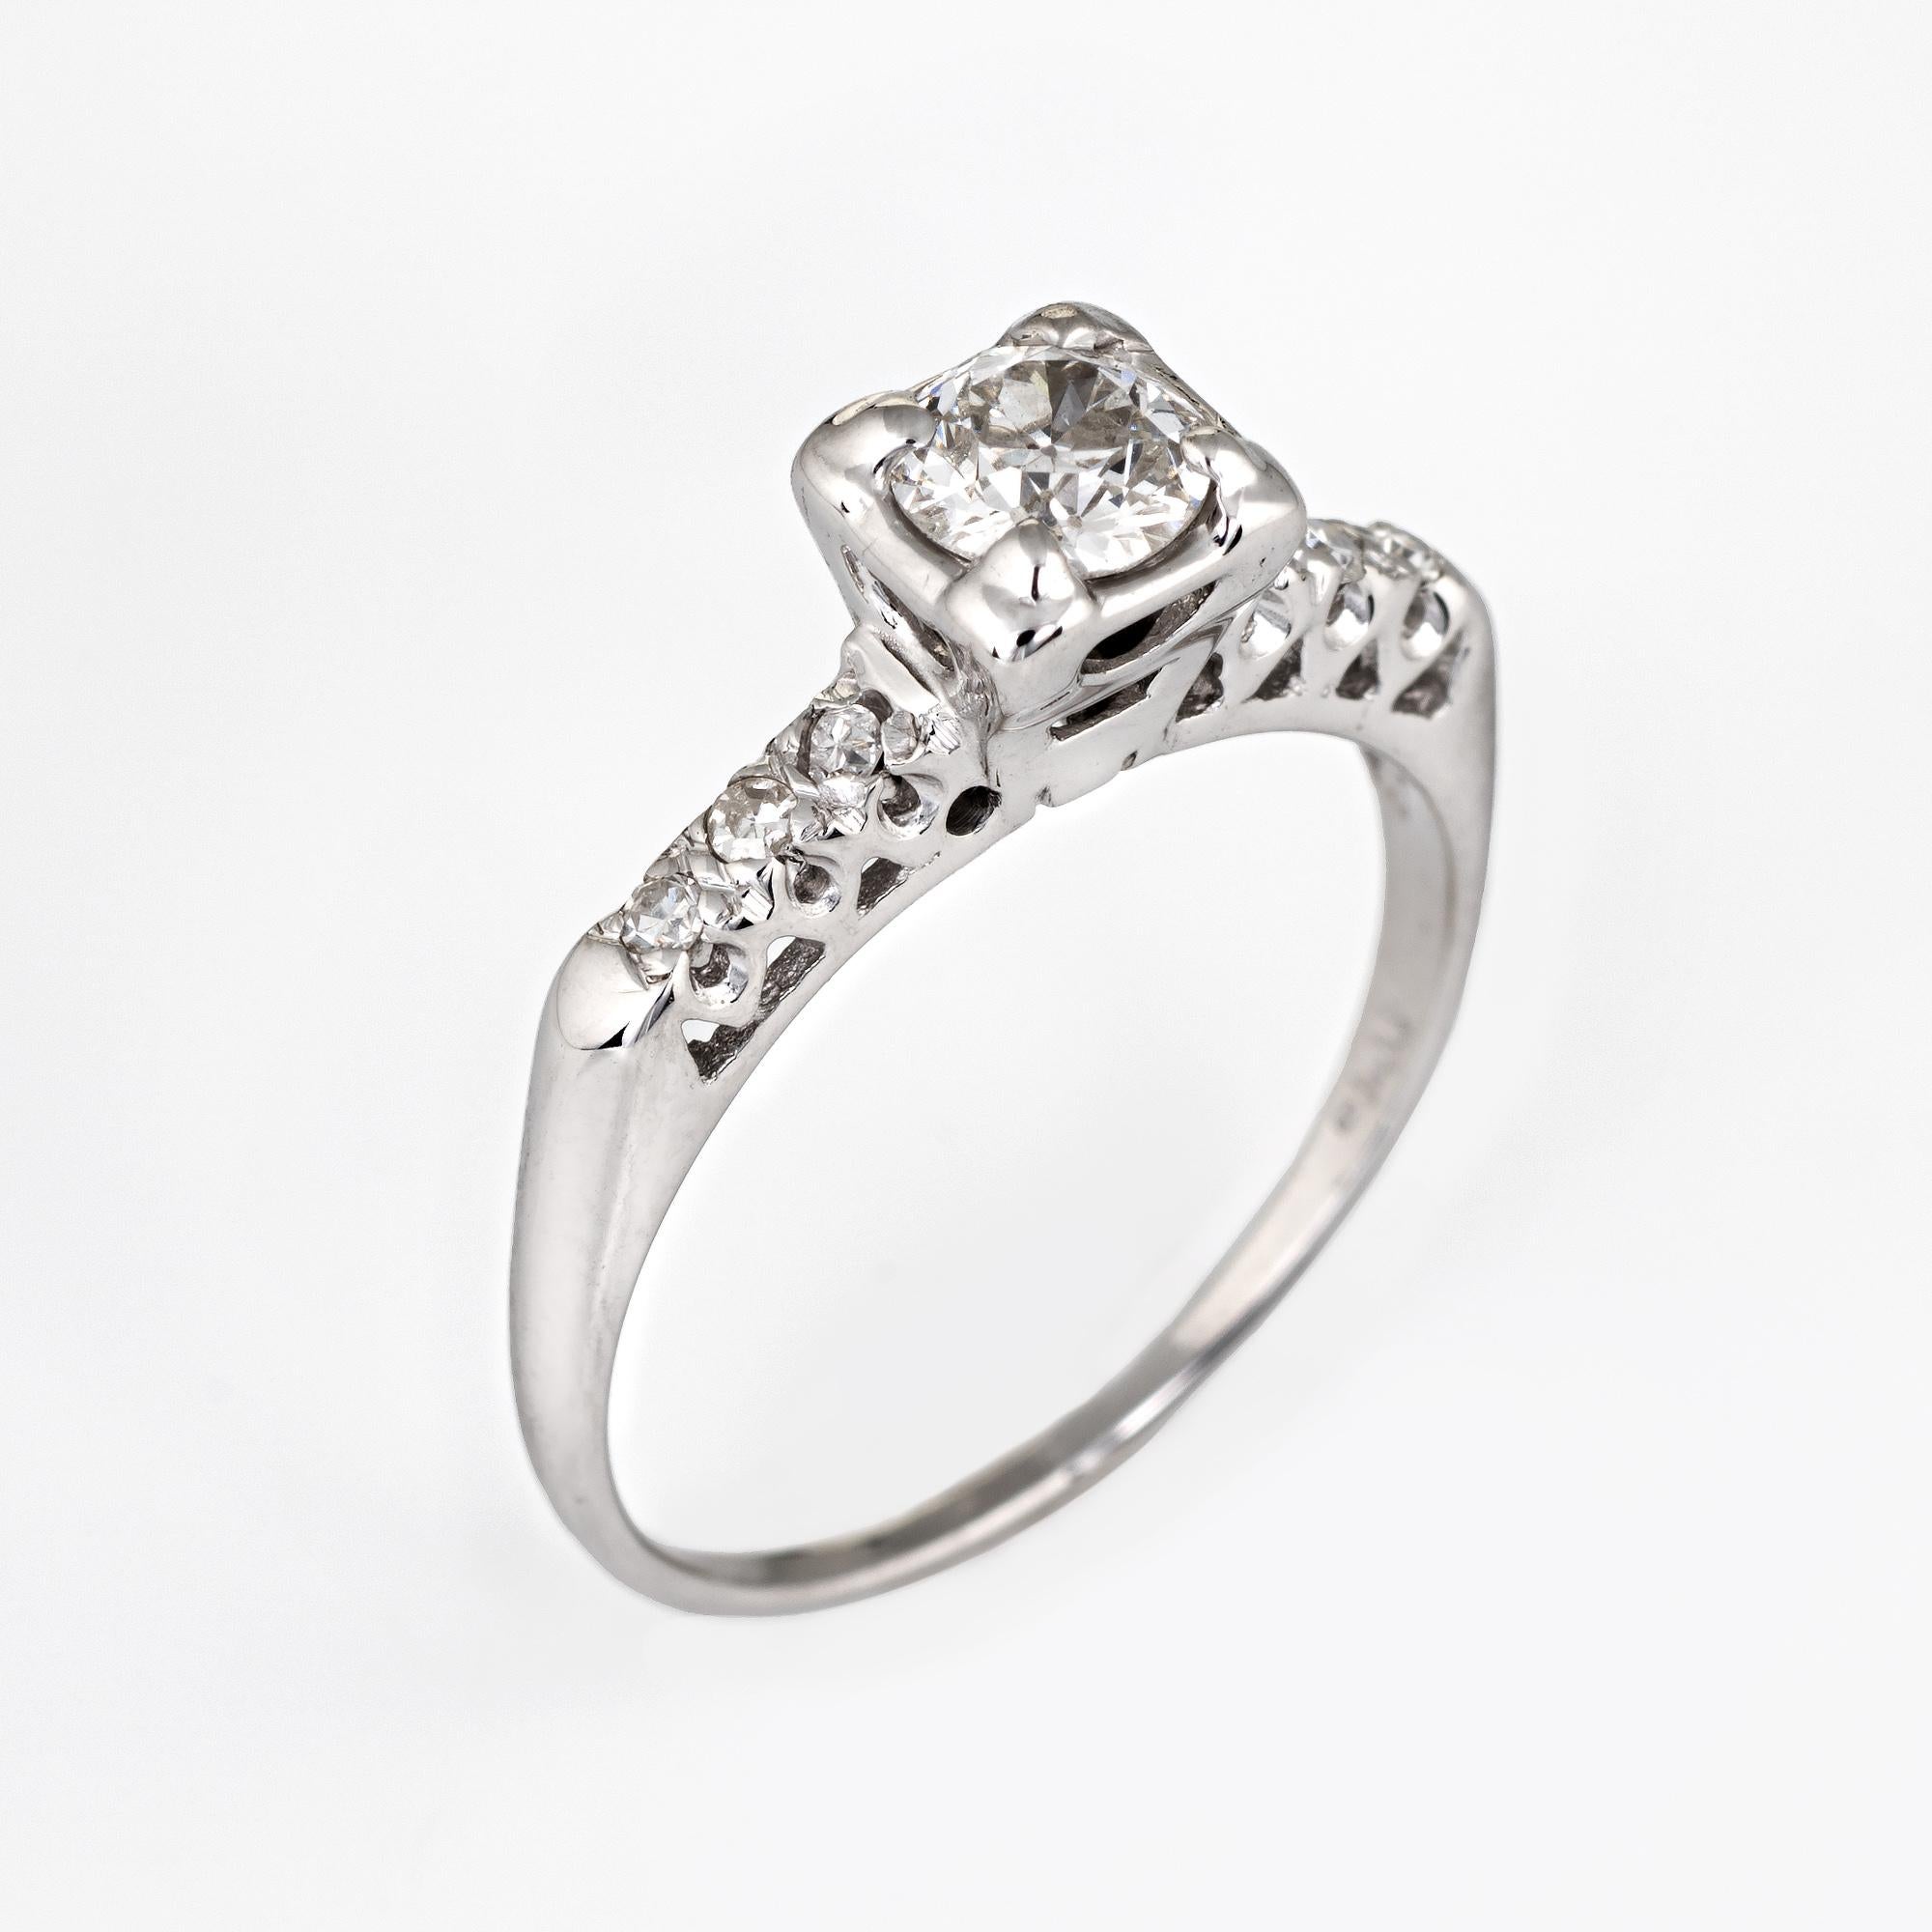 Fein ausgearbeiteter Vintage-Diamant-Verlobungsring (ca. 1950er bis 1960er Jahre) aus 14 Karat Weißgold.

Der mittig montierte Diamant im alten europäischen Schliff hat einen geschätzten Wert von 0,50 Karat und ist mit sechs geschätzten Diamanten im